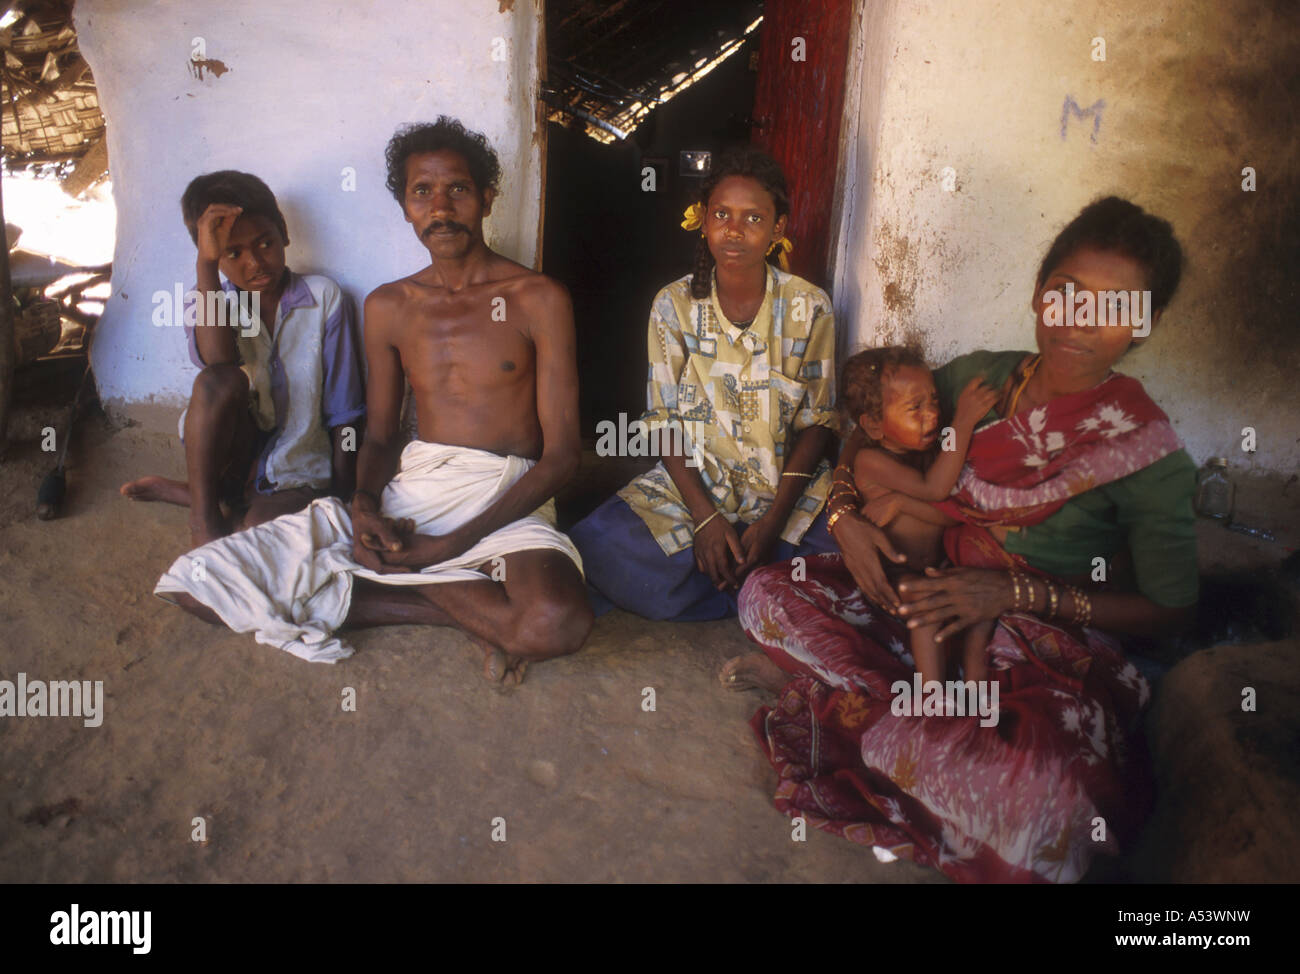 Painet ha2217 5003 donna uomo uomini india schiavitù liberato lavoratori coatti palani Tamil Nadu paese nazione in via di sviluppo Foto Stock